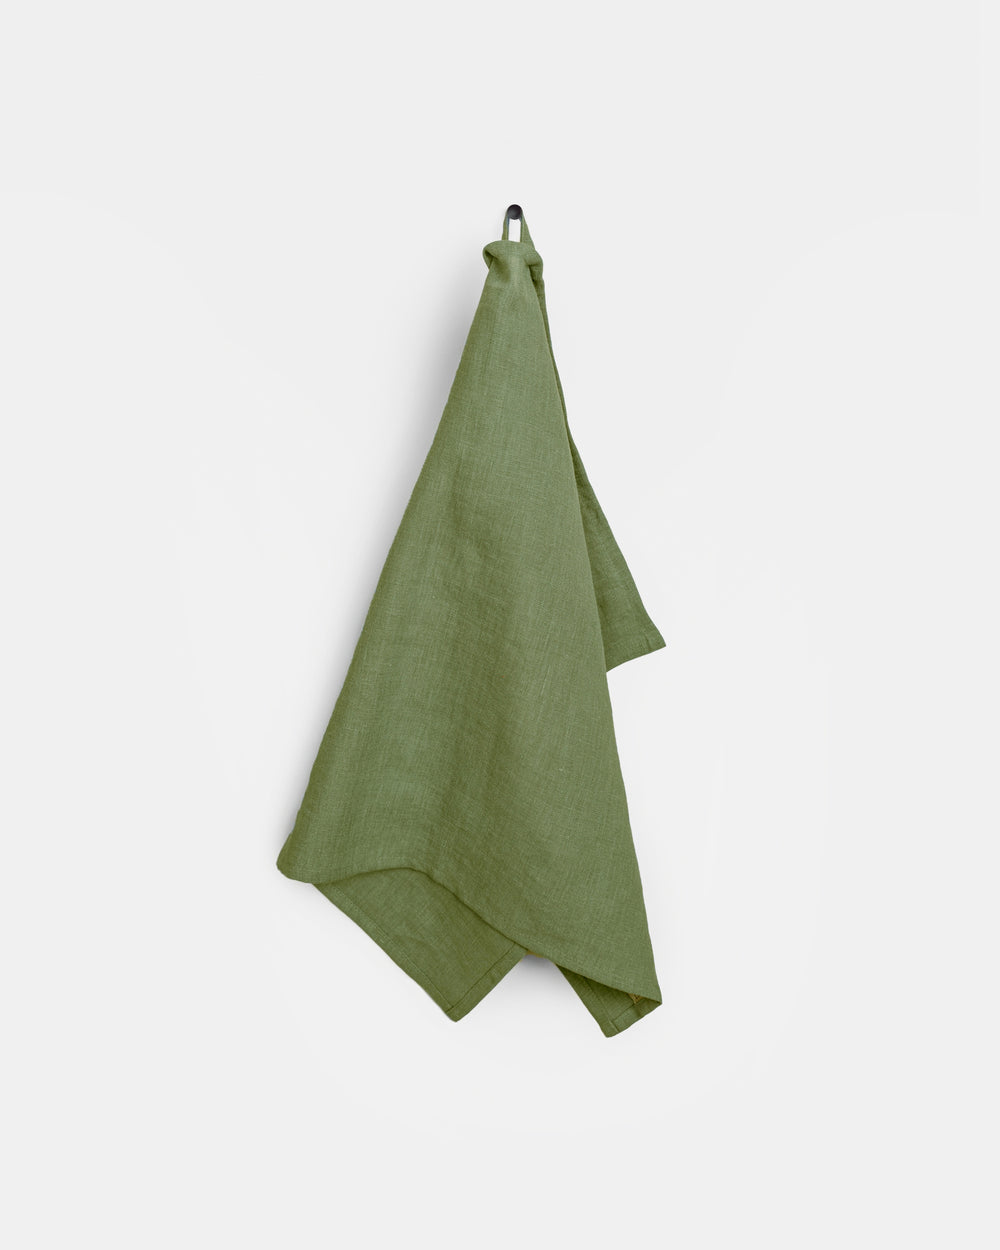 https://magiclinen.com/cdn/shop/products/linen-tea-towel-forest-green-1.jpg?v=1675965090&width=1000